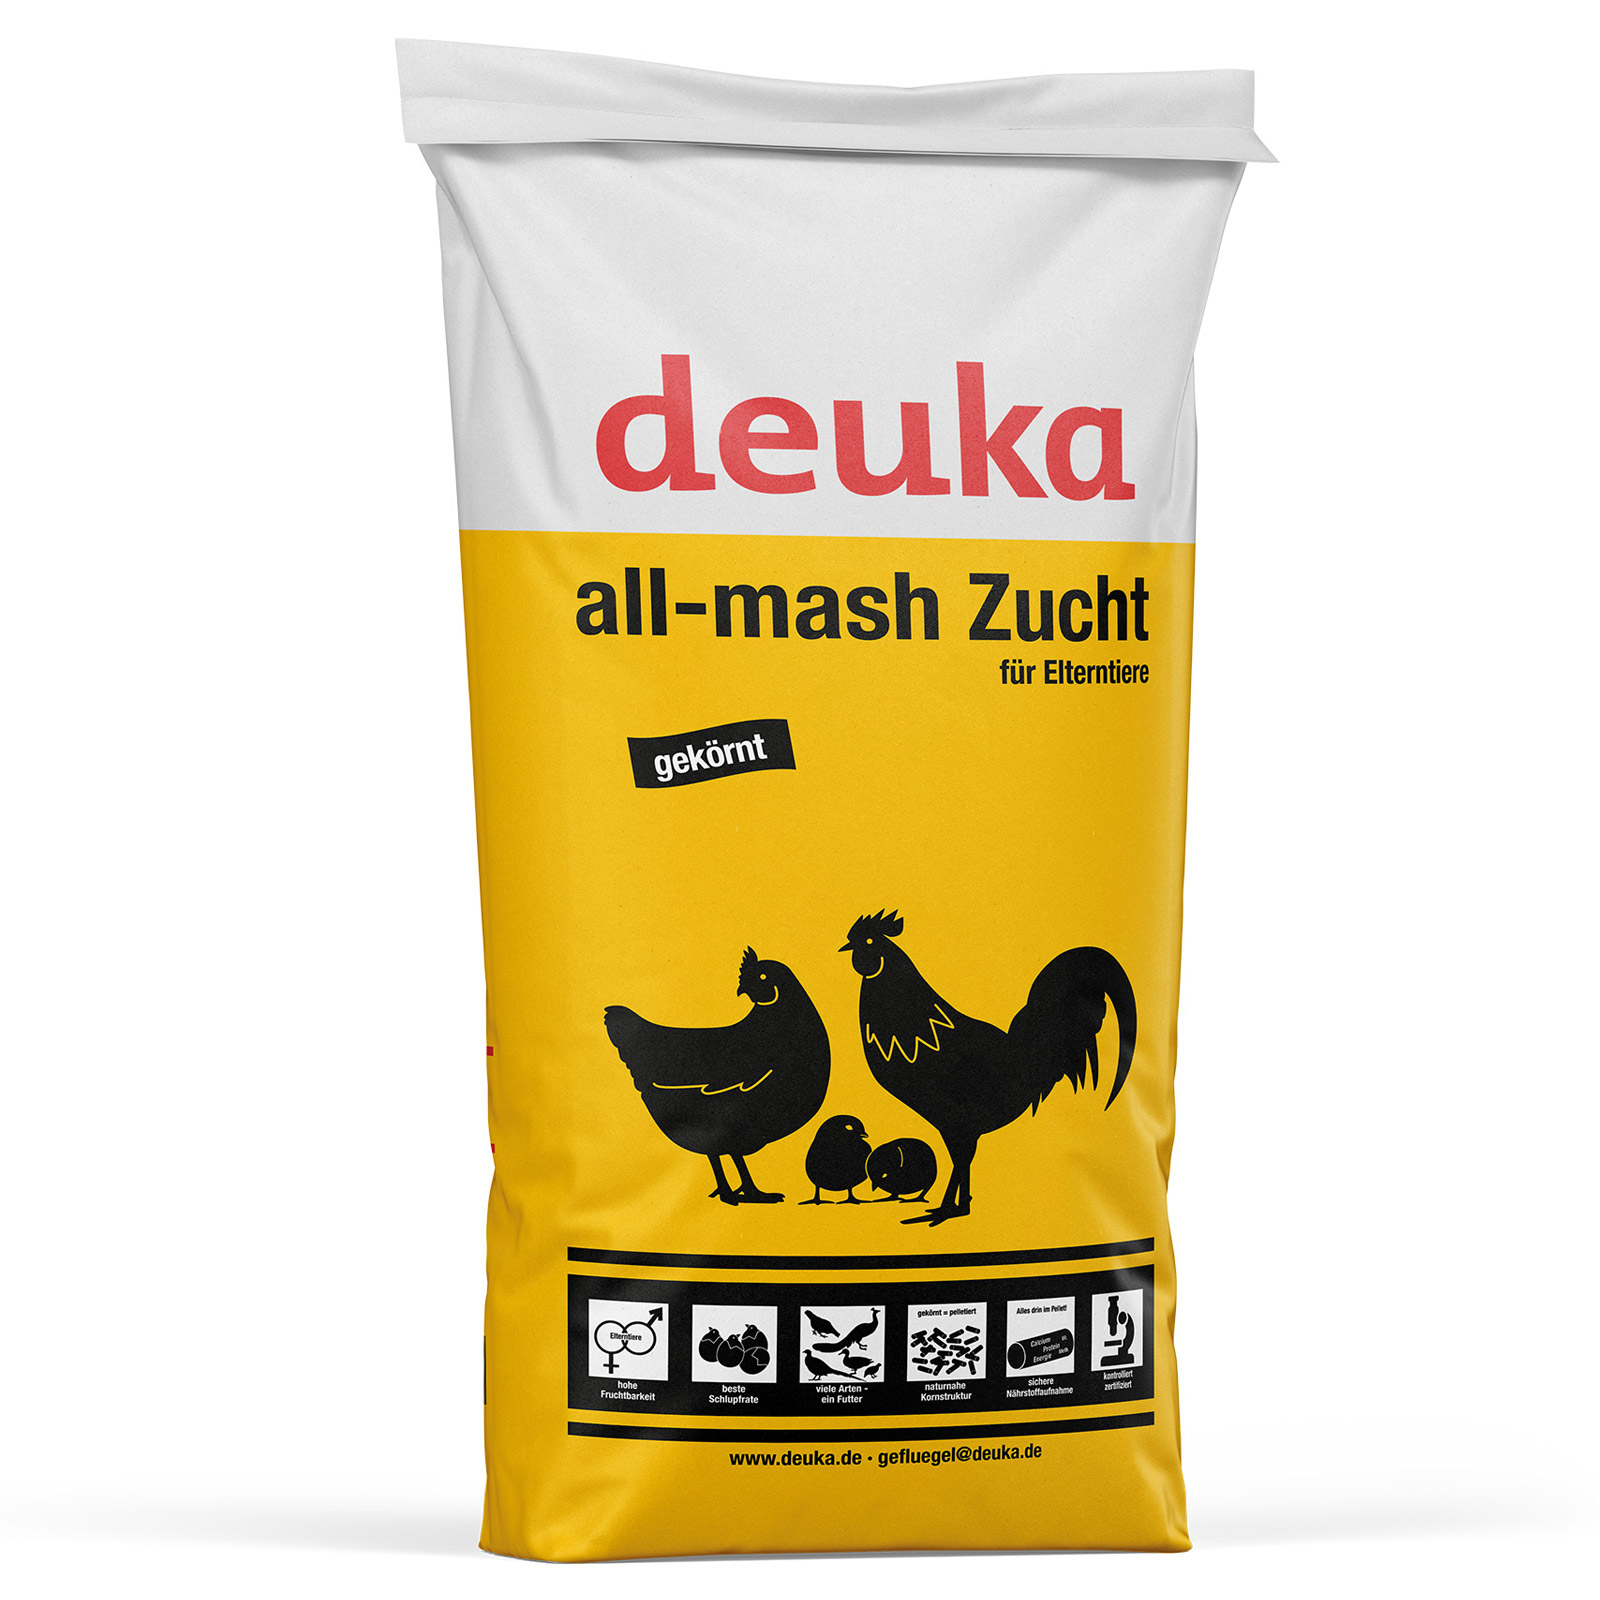 Deuka All-Mash Breeding Poultry Feed 25 kg